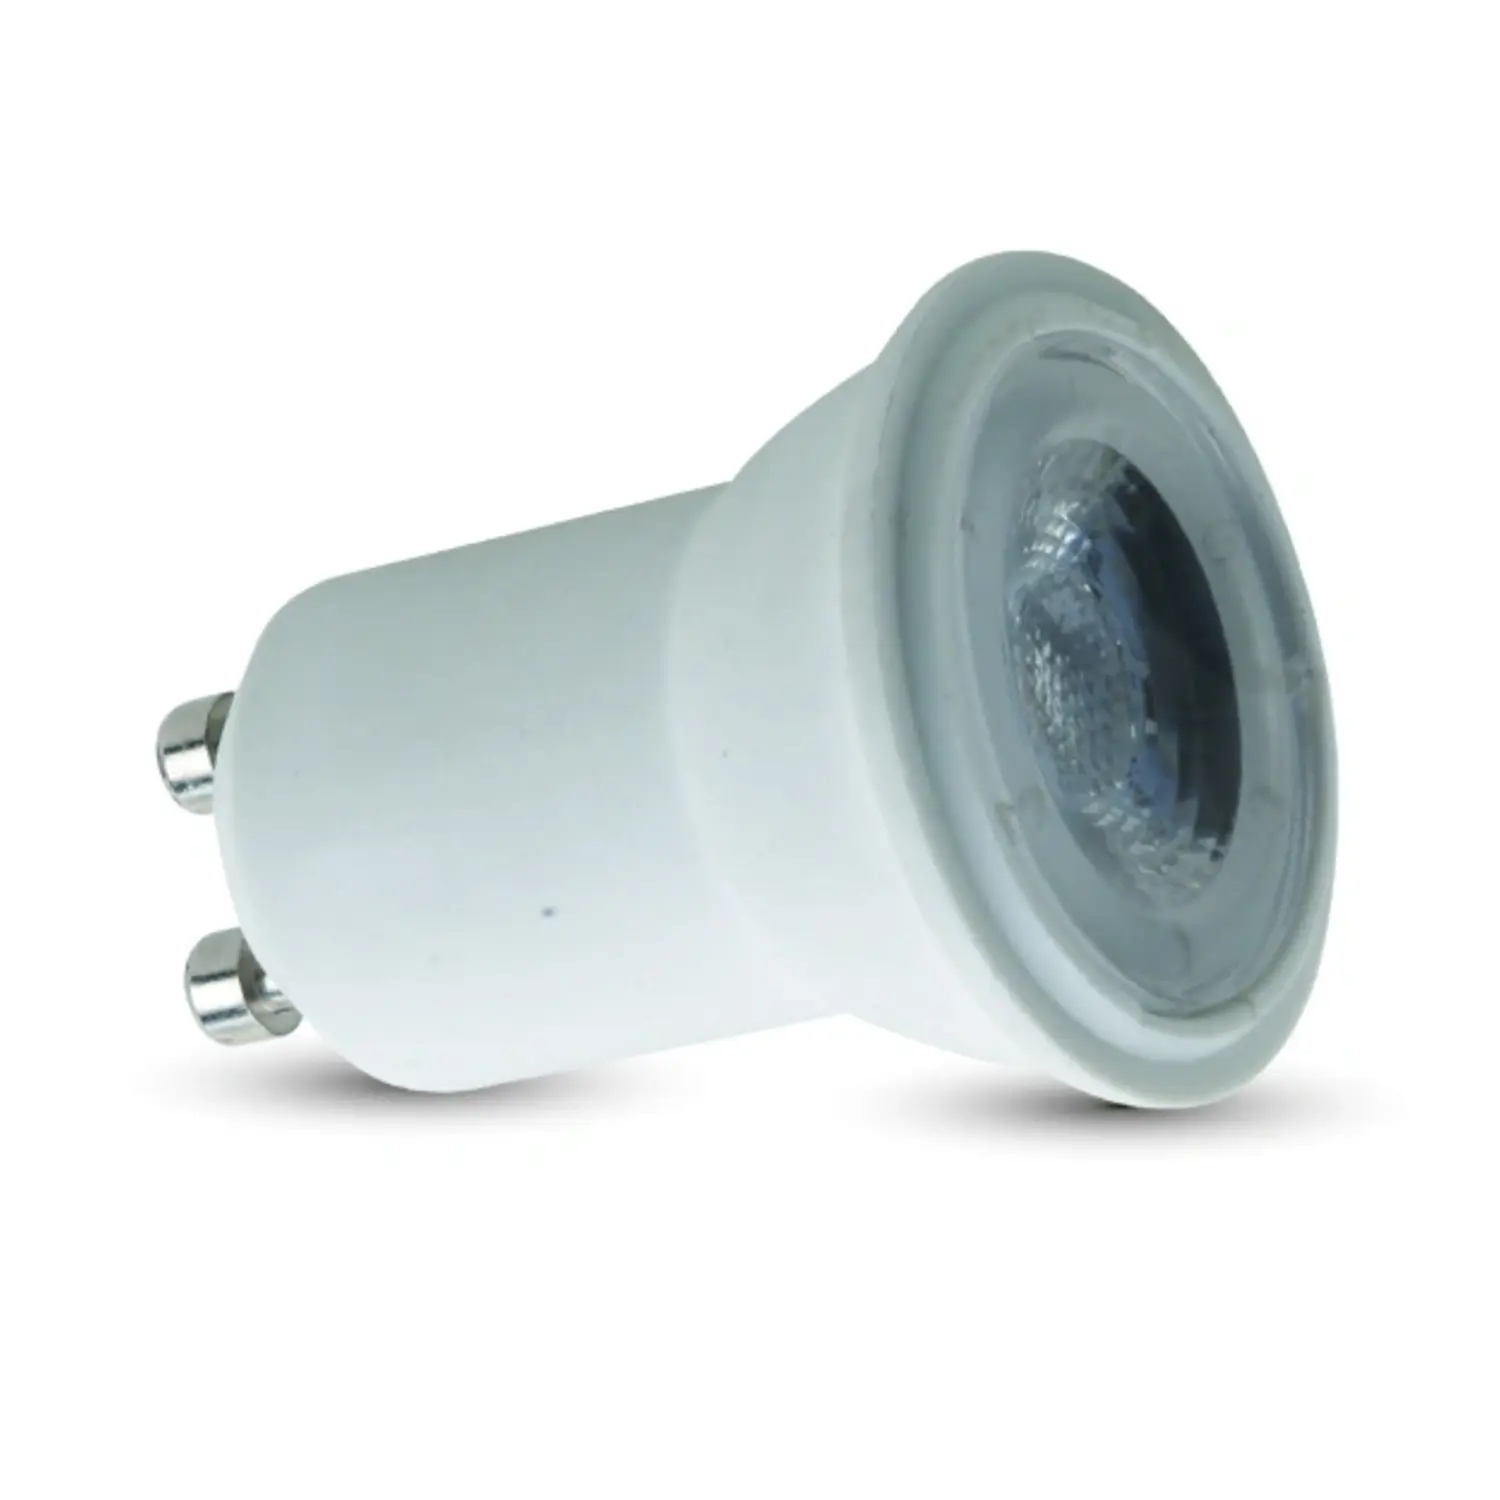 immagine del prodotto lampadina led 35 mm faretto spot lampada gu10 2 watt bianco freddo